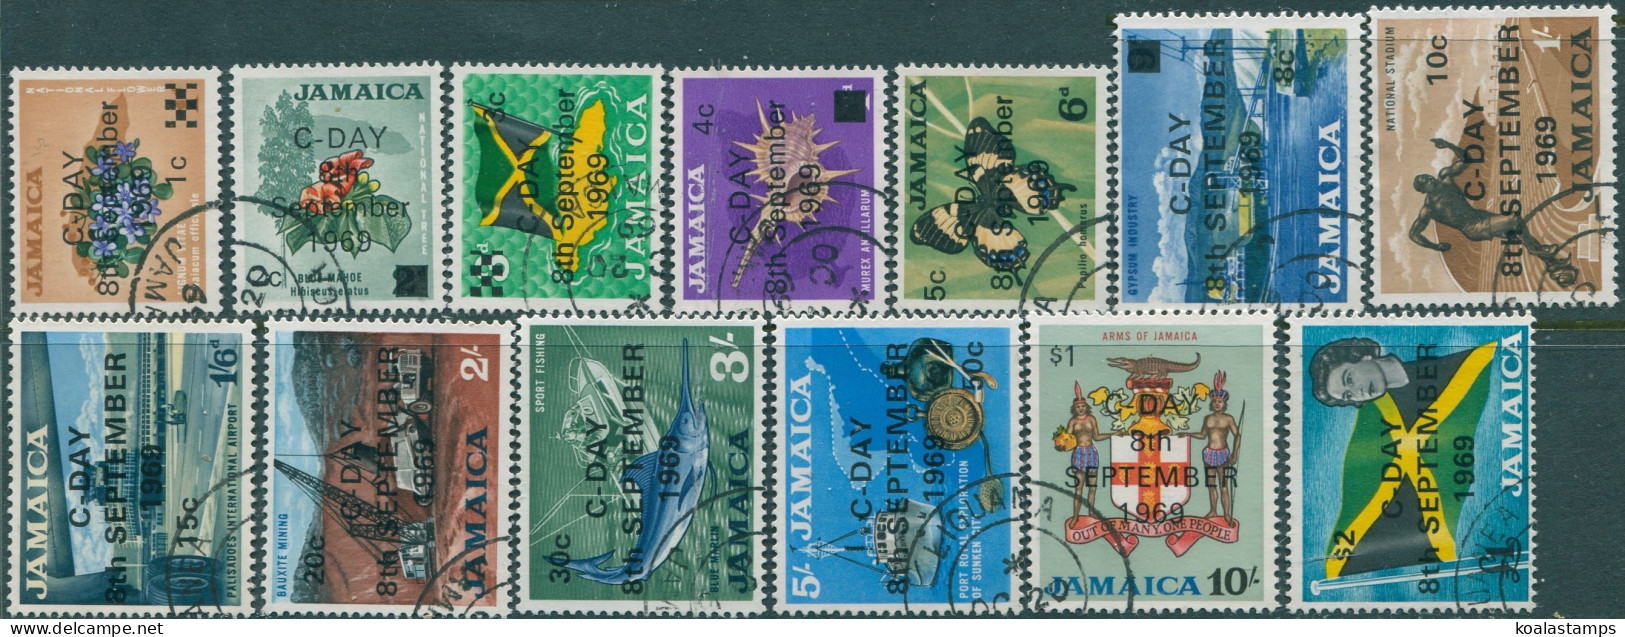 Jamaica 1969 SG280-292 Decimal Currency Surcharges Set FU - Jamaique (1962-...)